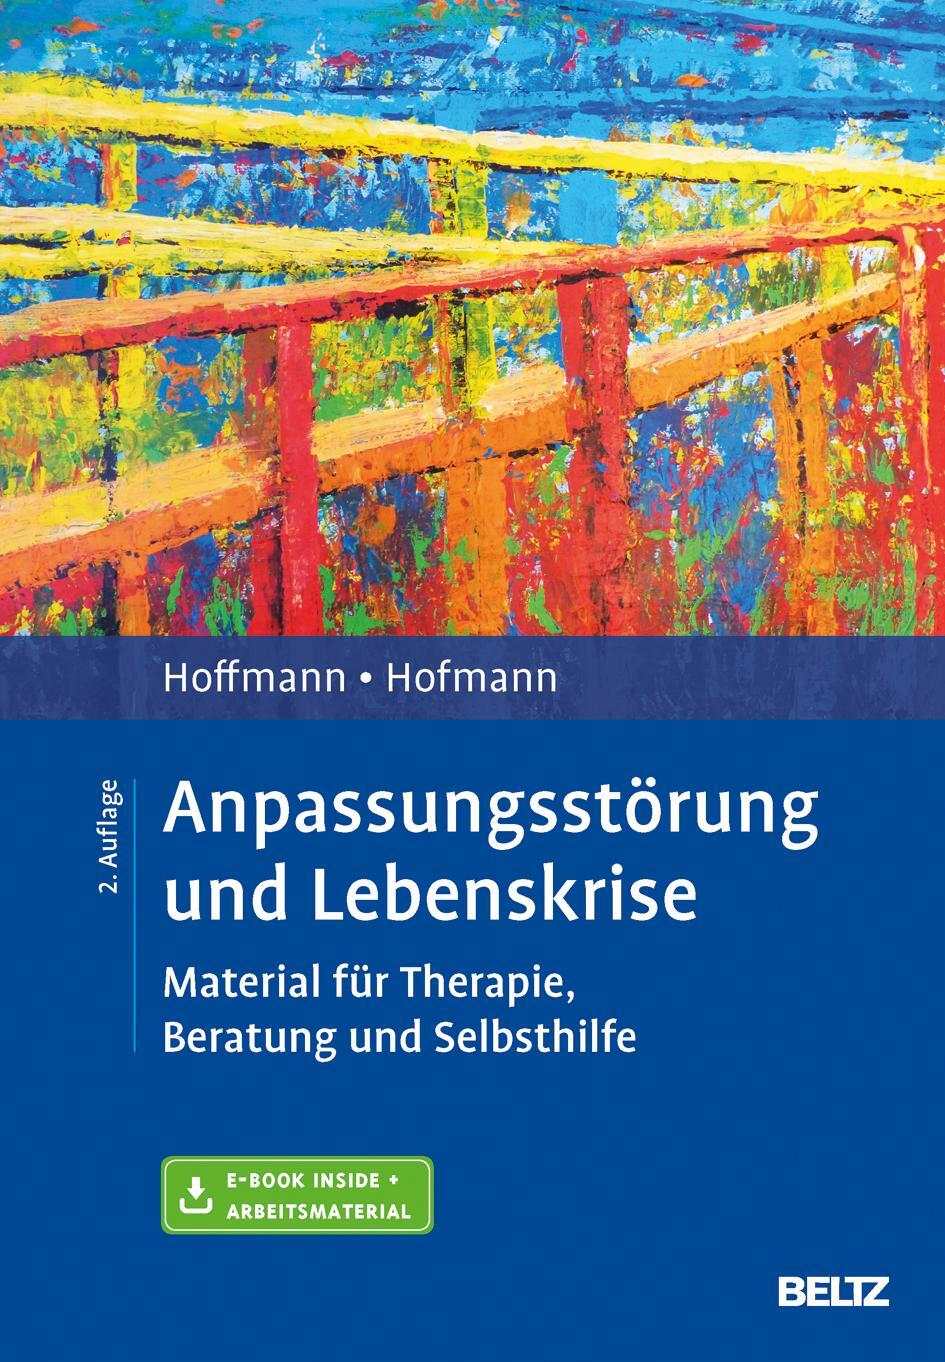 Anpassungsstörung und Lebenskrise - Hoffmann, Nicolas